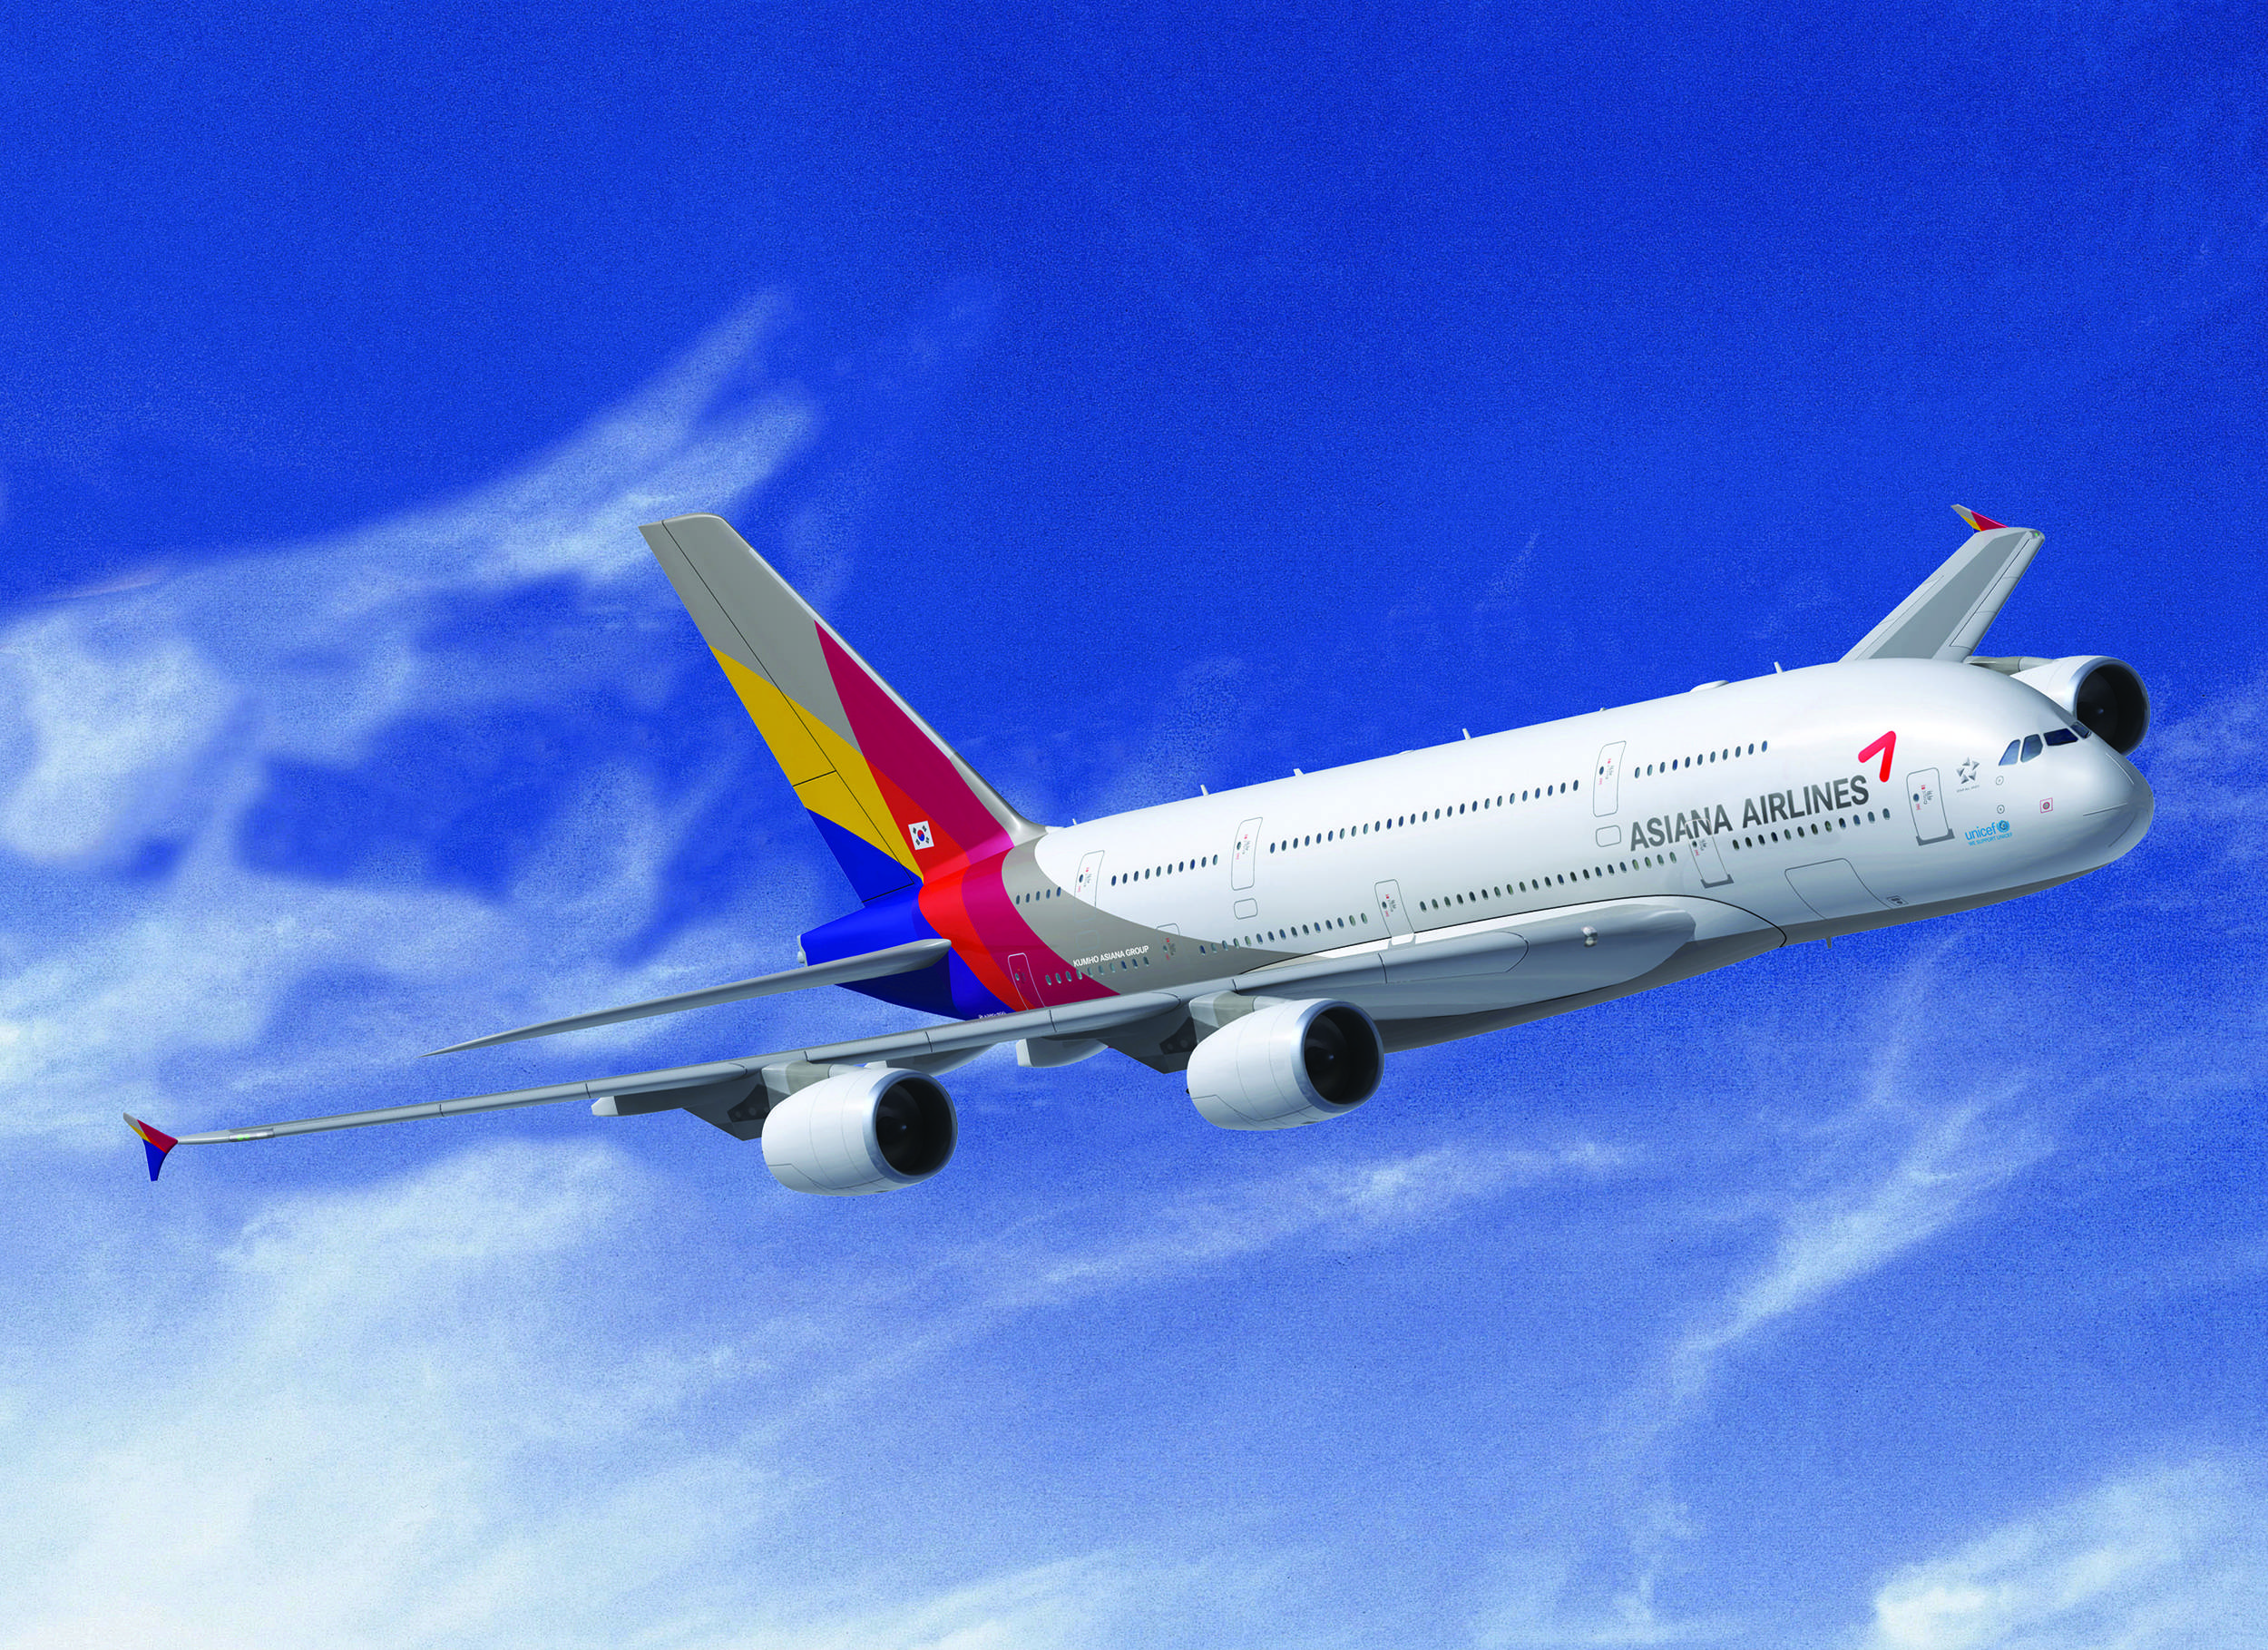 Азиана эйрлайнс авиакомпания - официальный сайт asiana airlines, контакты, авиабилеты и расписание рейсов  2021